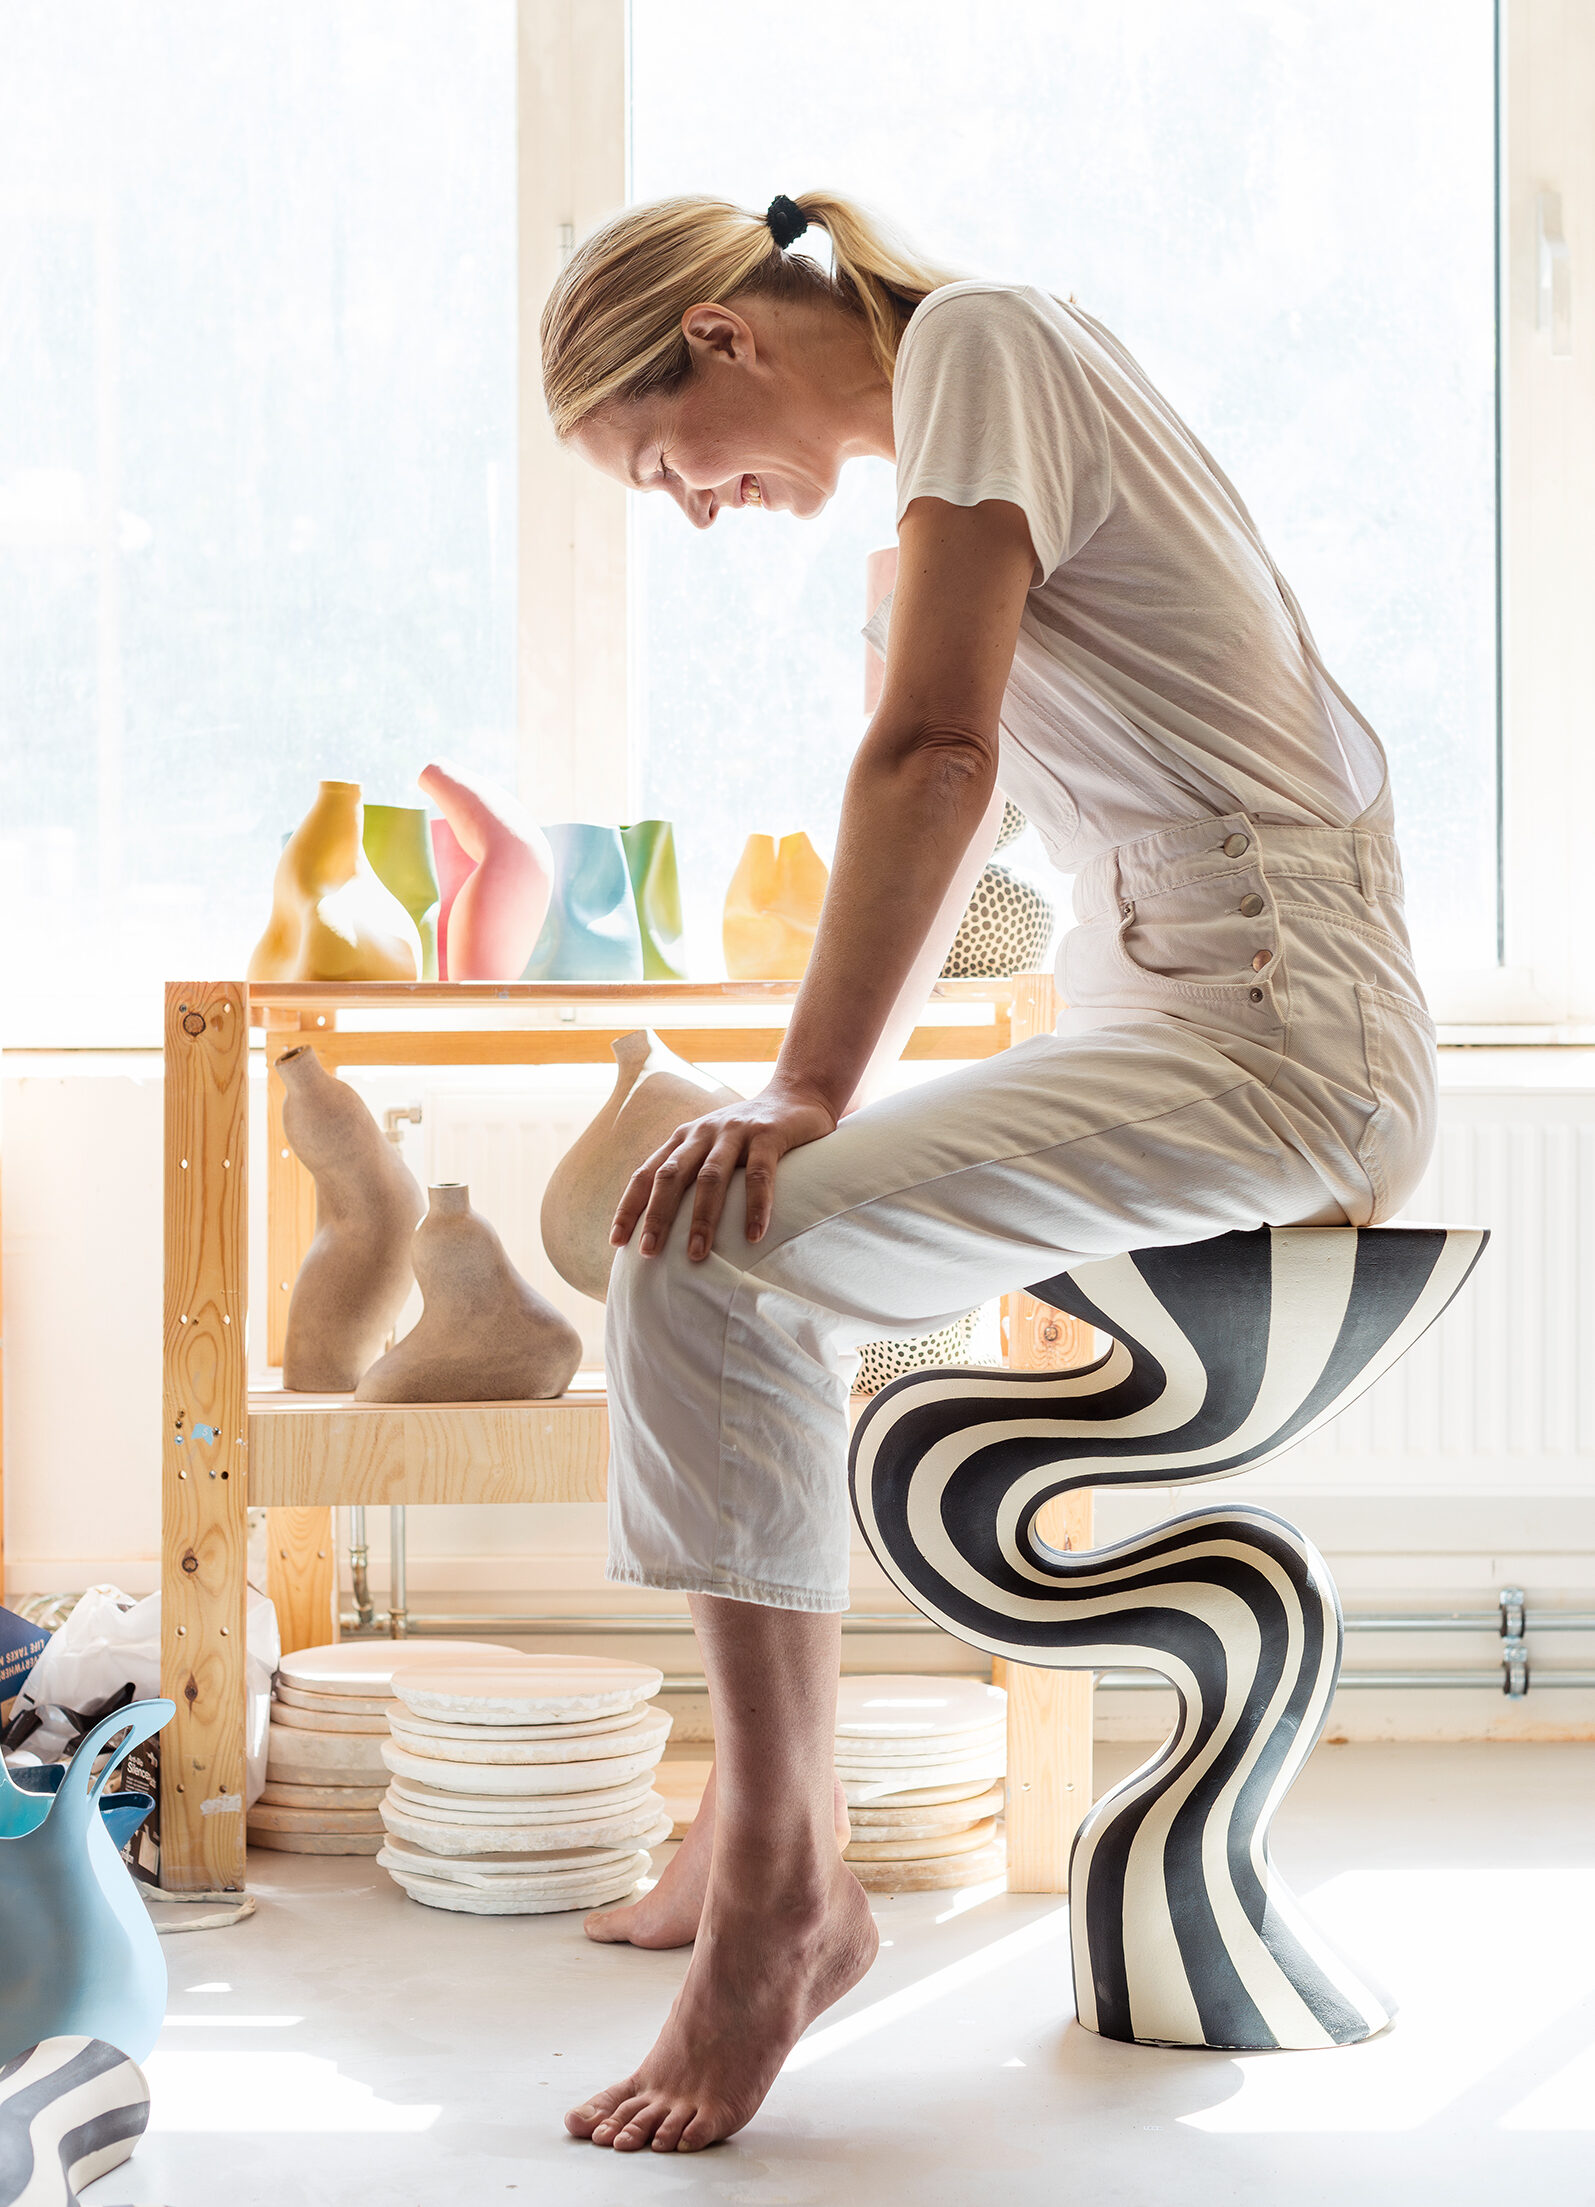 – Leire er mye sterkere enn man tror, sier Johanne Birkeland, sittende på hennes største keramikkprodukt til nå, bordet «Fåvne». Foto: Astrid Waller